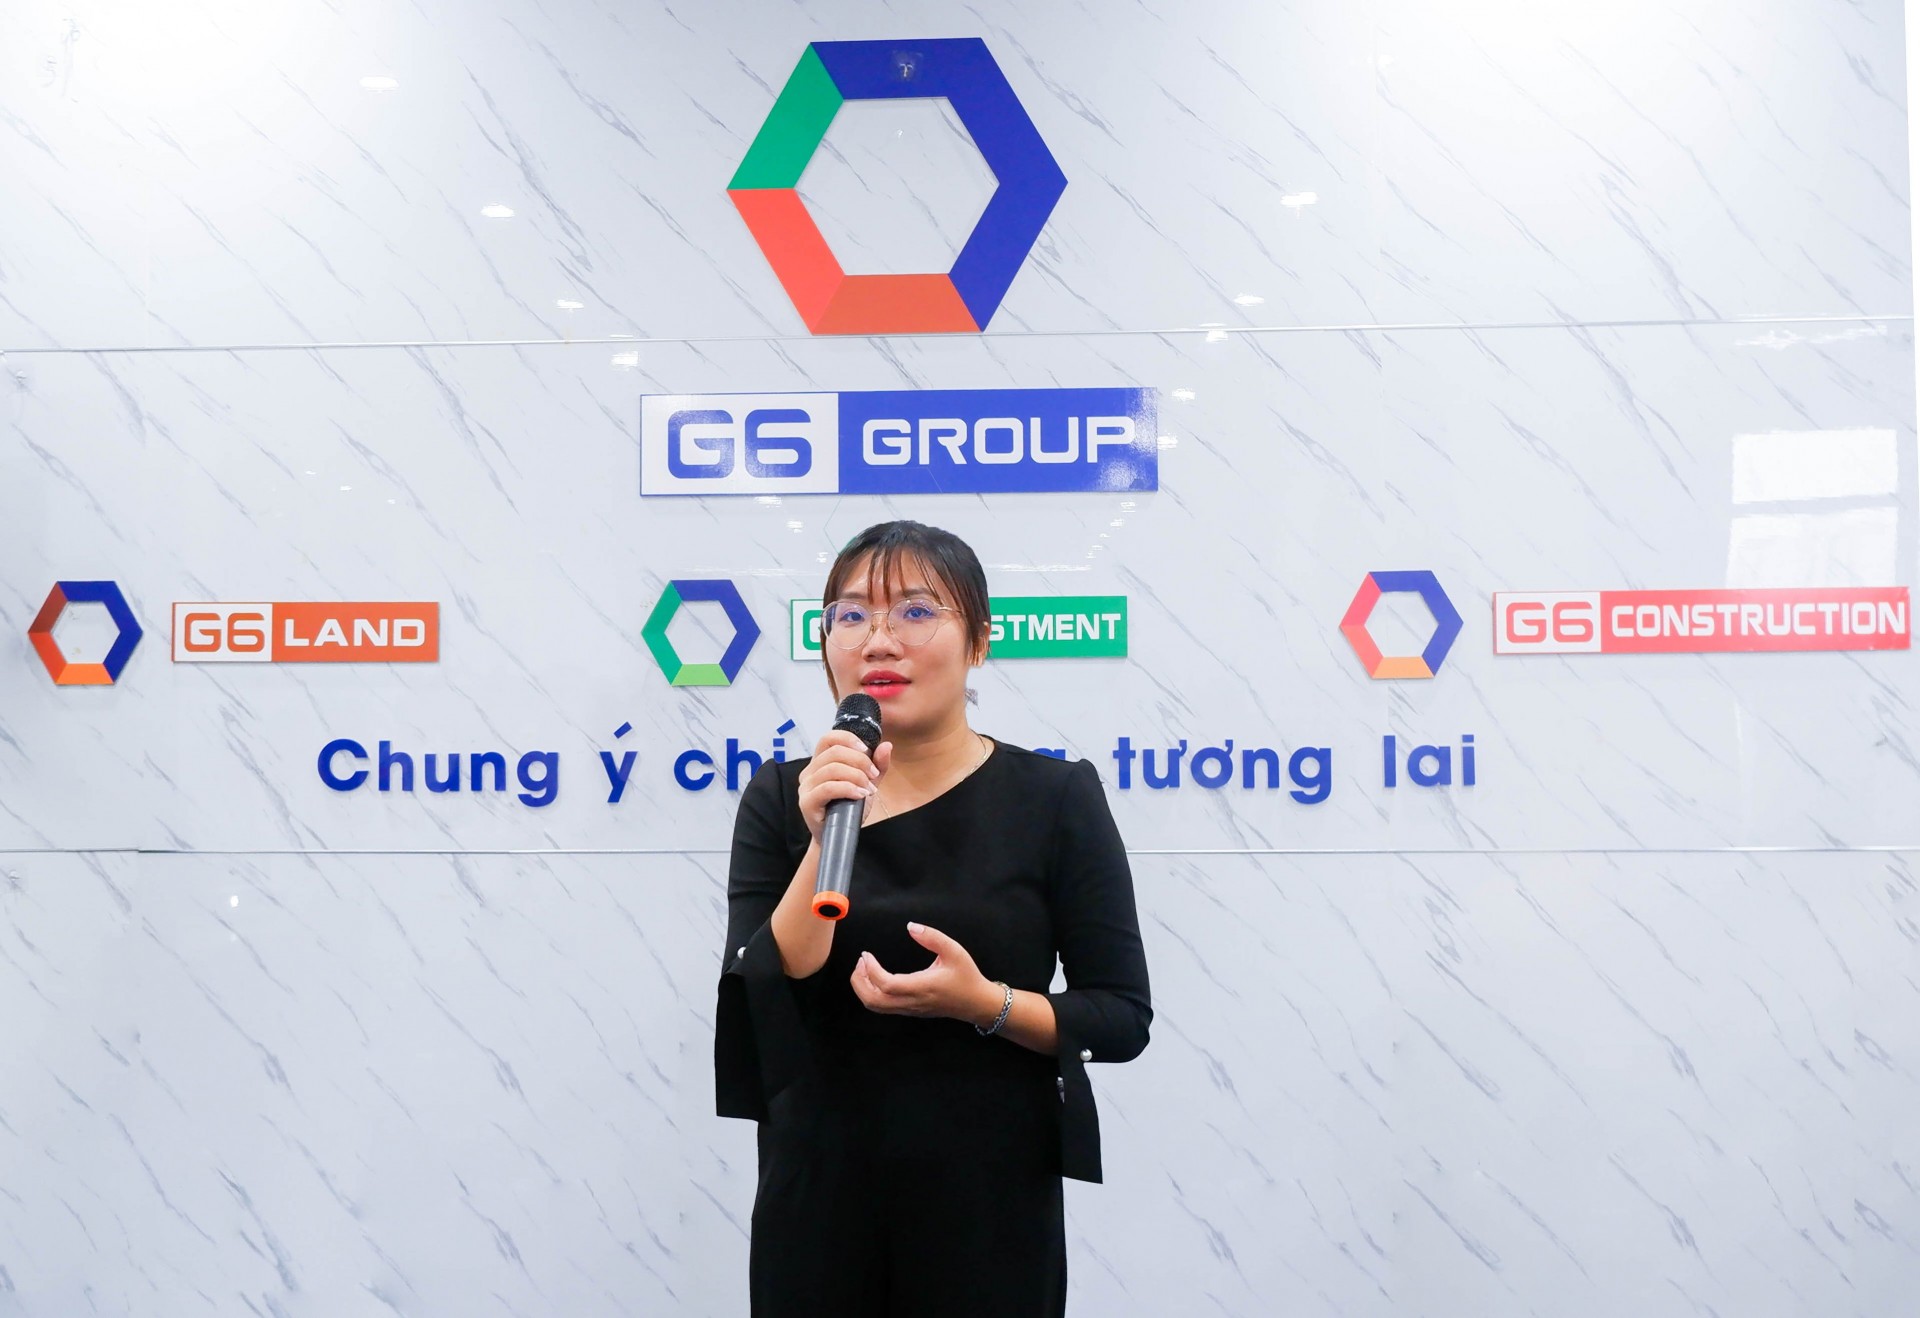 Tập đoàn G6 công bố các Quyết định bổ nhiệm và sơ kết 6 tháng đầu năm 2022, công bố dự án đầu tư